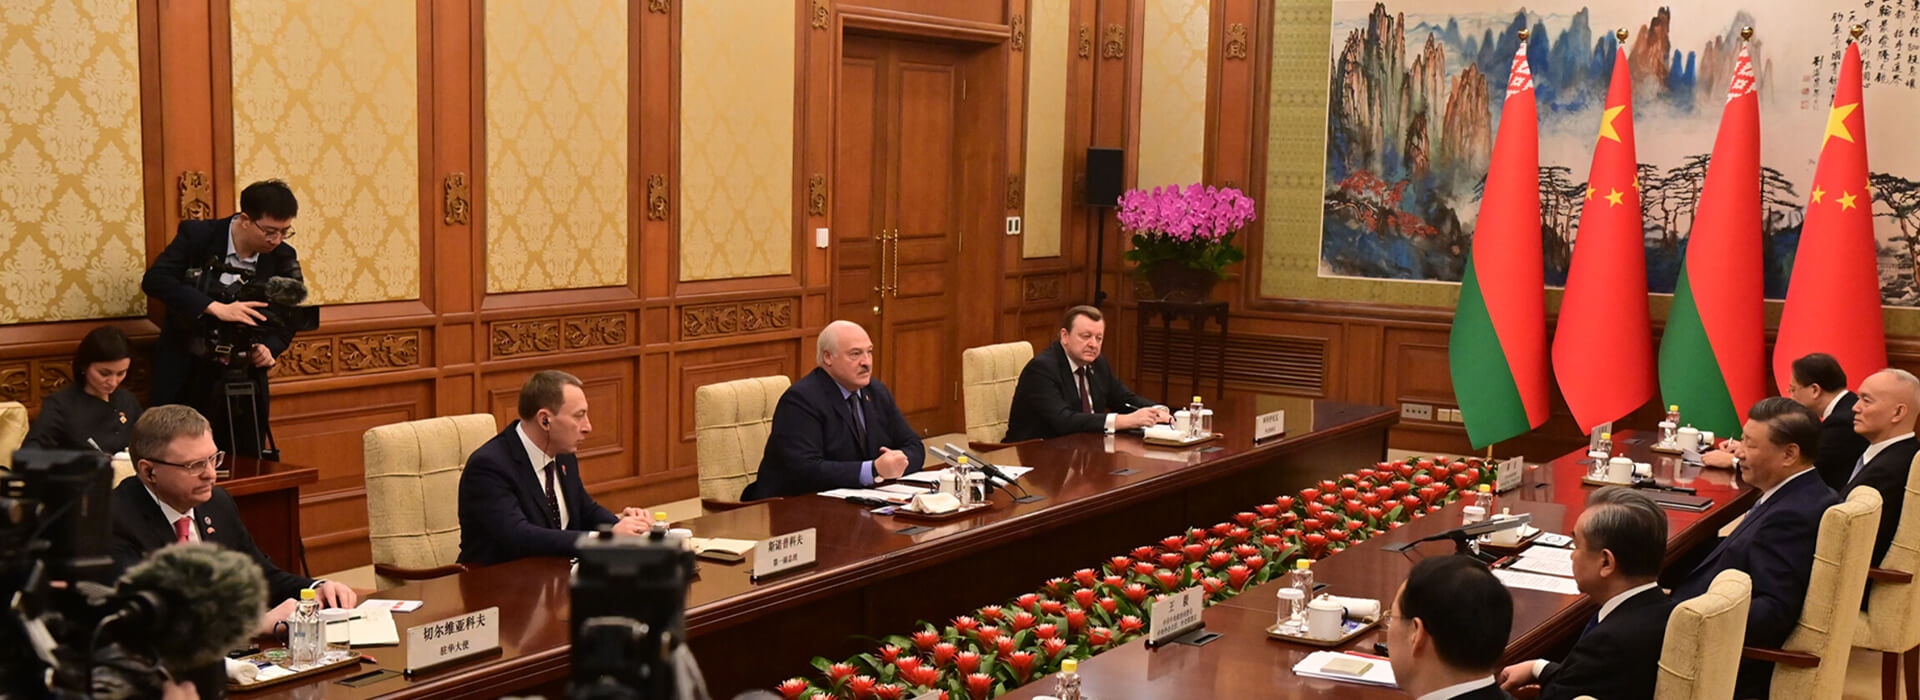 iSANS: Отношения с Китаем не уравновесят российского влияния и не способствуют сохранению беларусского суверенитета